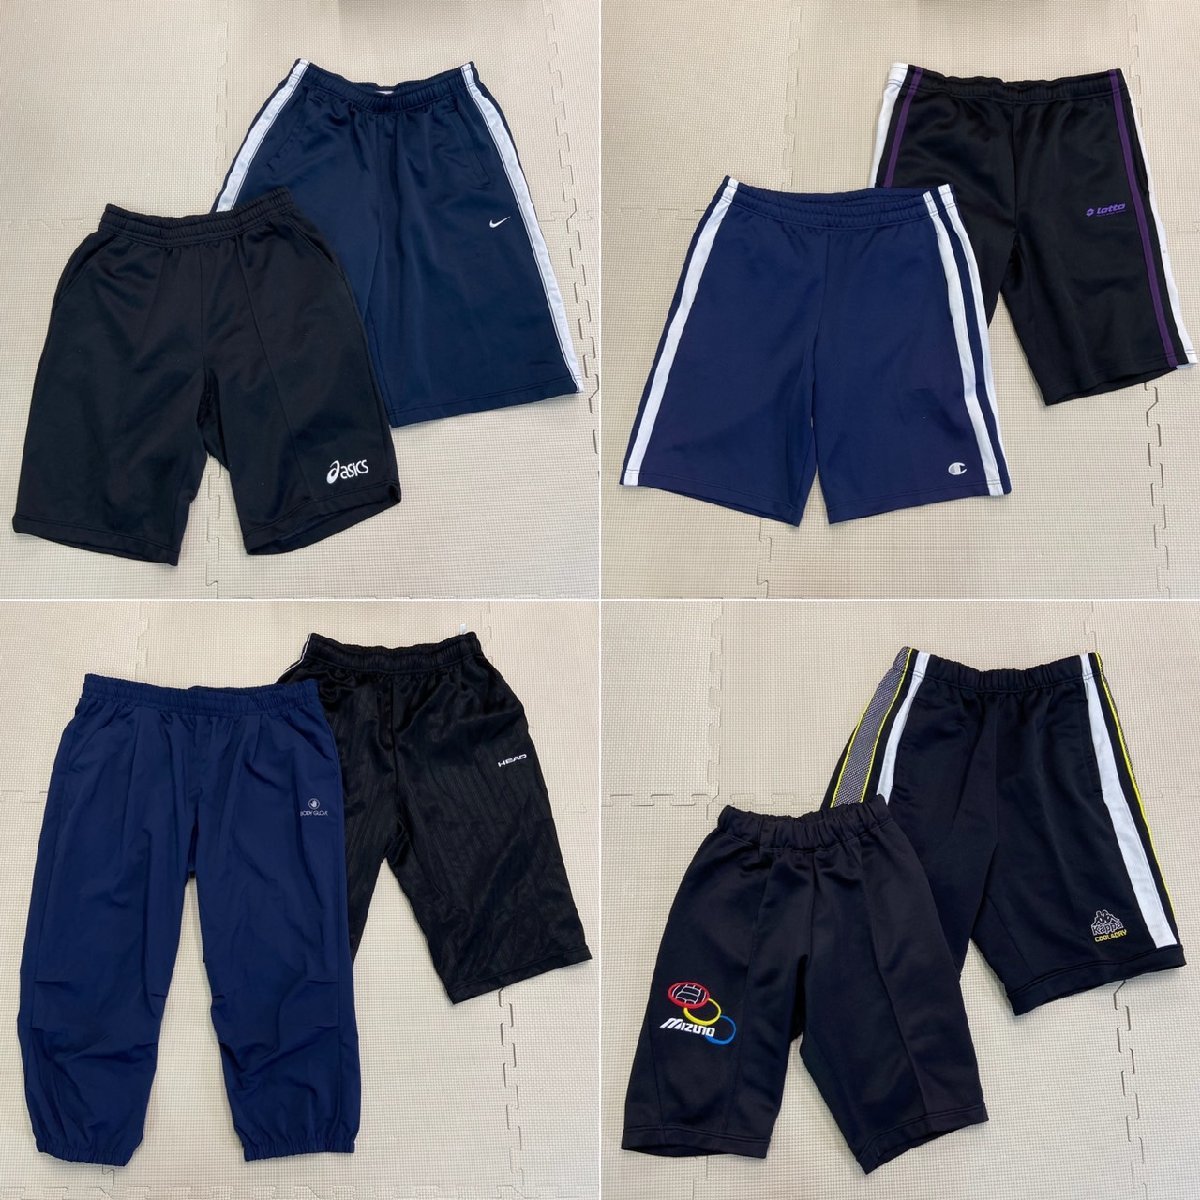 (Y)YJ023( коробка )( б/у ) спортивная одежда 30 позиций комплект /MIZUNO/NIKE/asics/ короткий рукав / шорты / мужской / женский / для мужчин и женщин / тренировка / продажа комплектом 